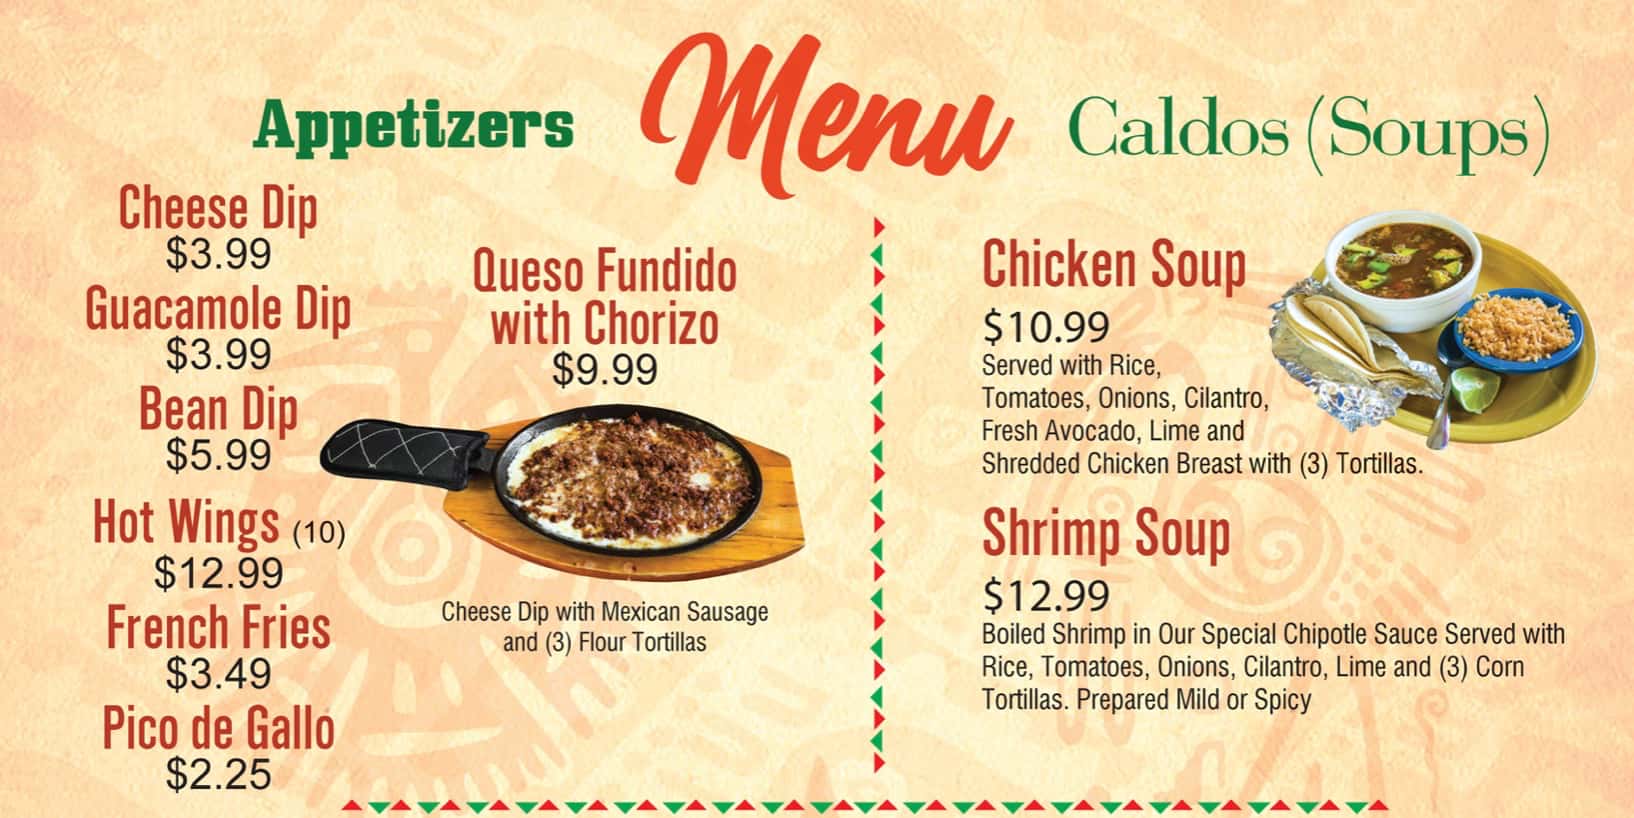 Casa Leon Mexican Restaurant Jacksonville Appetizers and Soups Menu